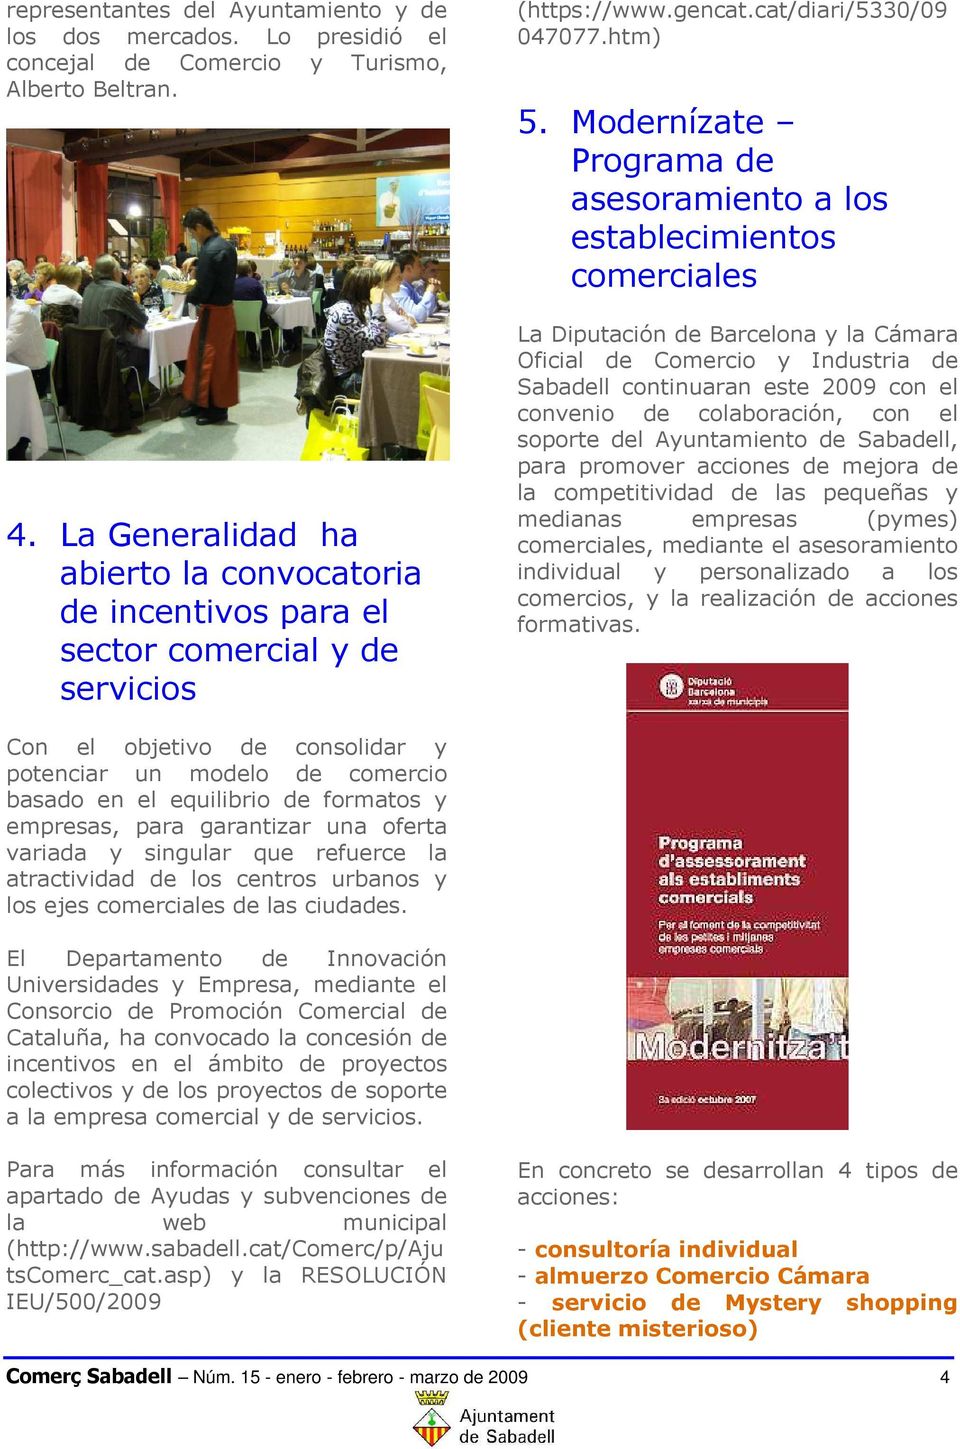 Modernízate Programa de asesoramiento a los establecimientos comerciales La Diputación de Barcelona y la Cámara Oficial de Comercio y Industria de Sabadell continuaran este 2009 con el convenio de